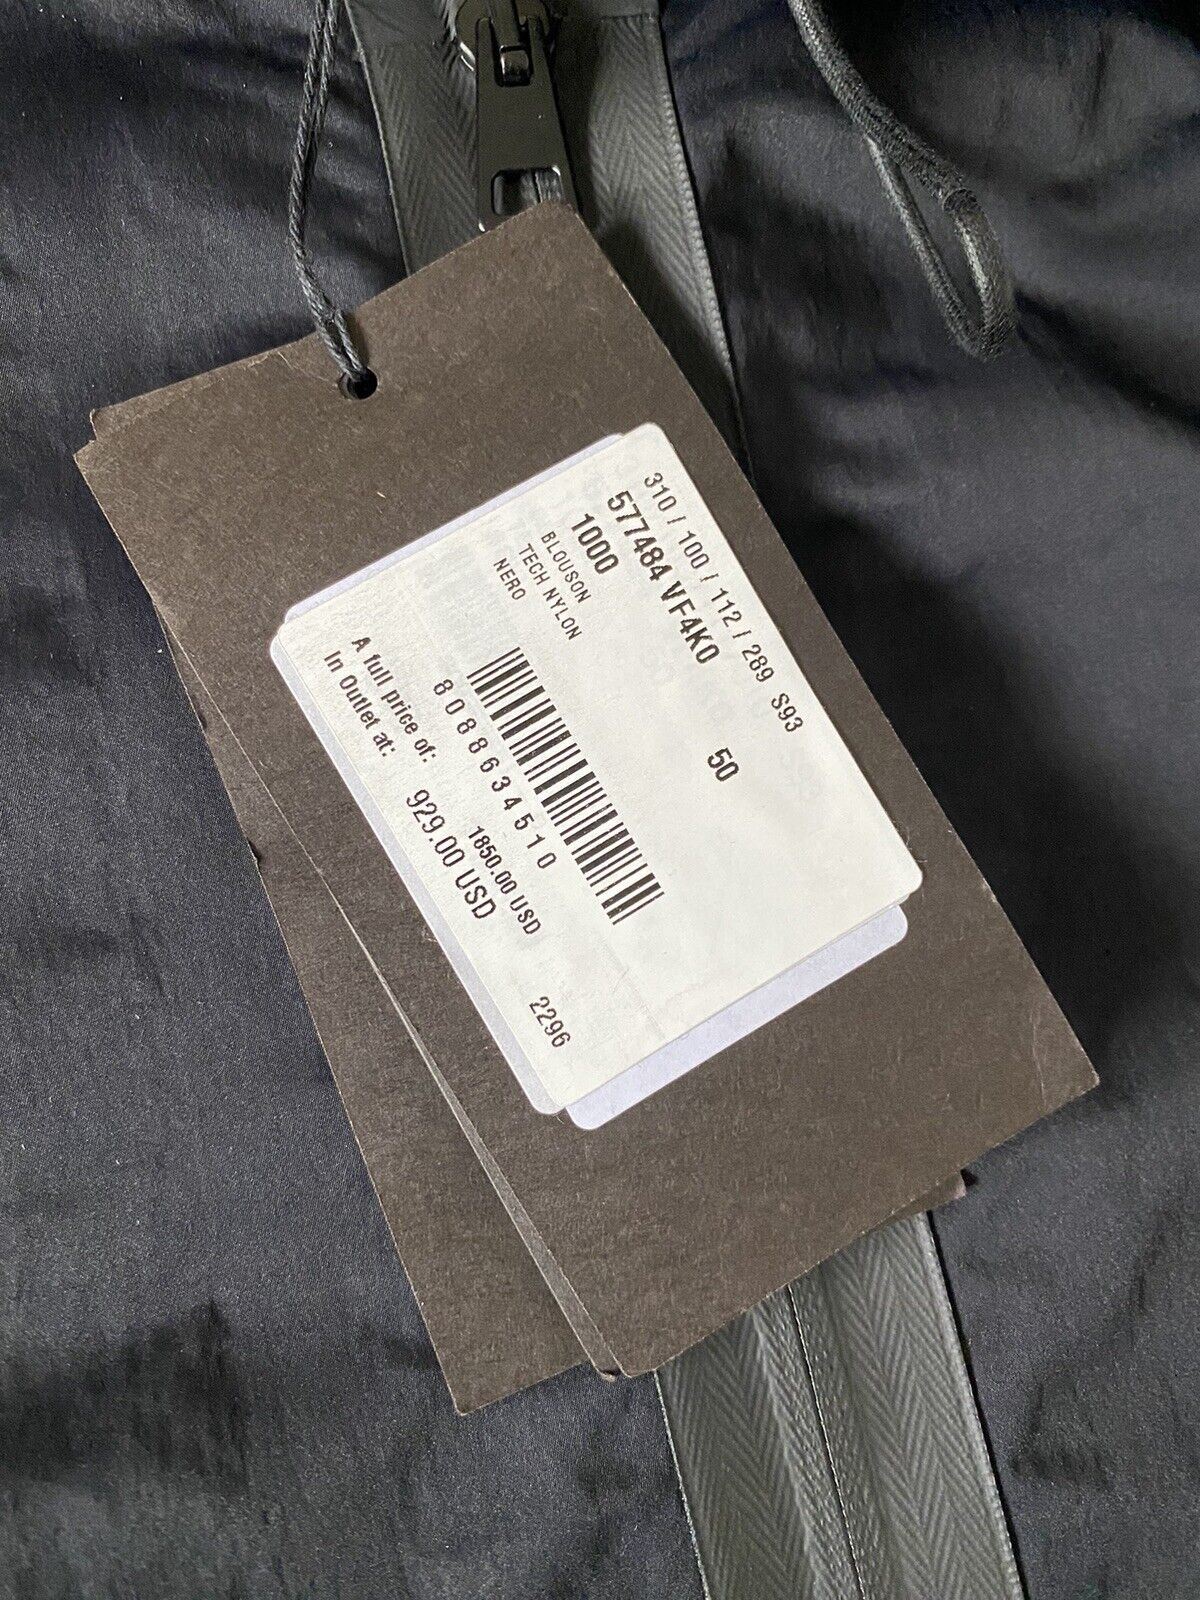 СЗТ 1850 долларов США Bottega Veneta Мужская рубашка из технического нейлона, черная куртка с капюшоном 40 США